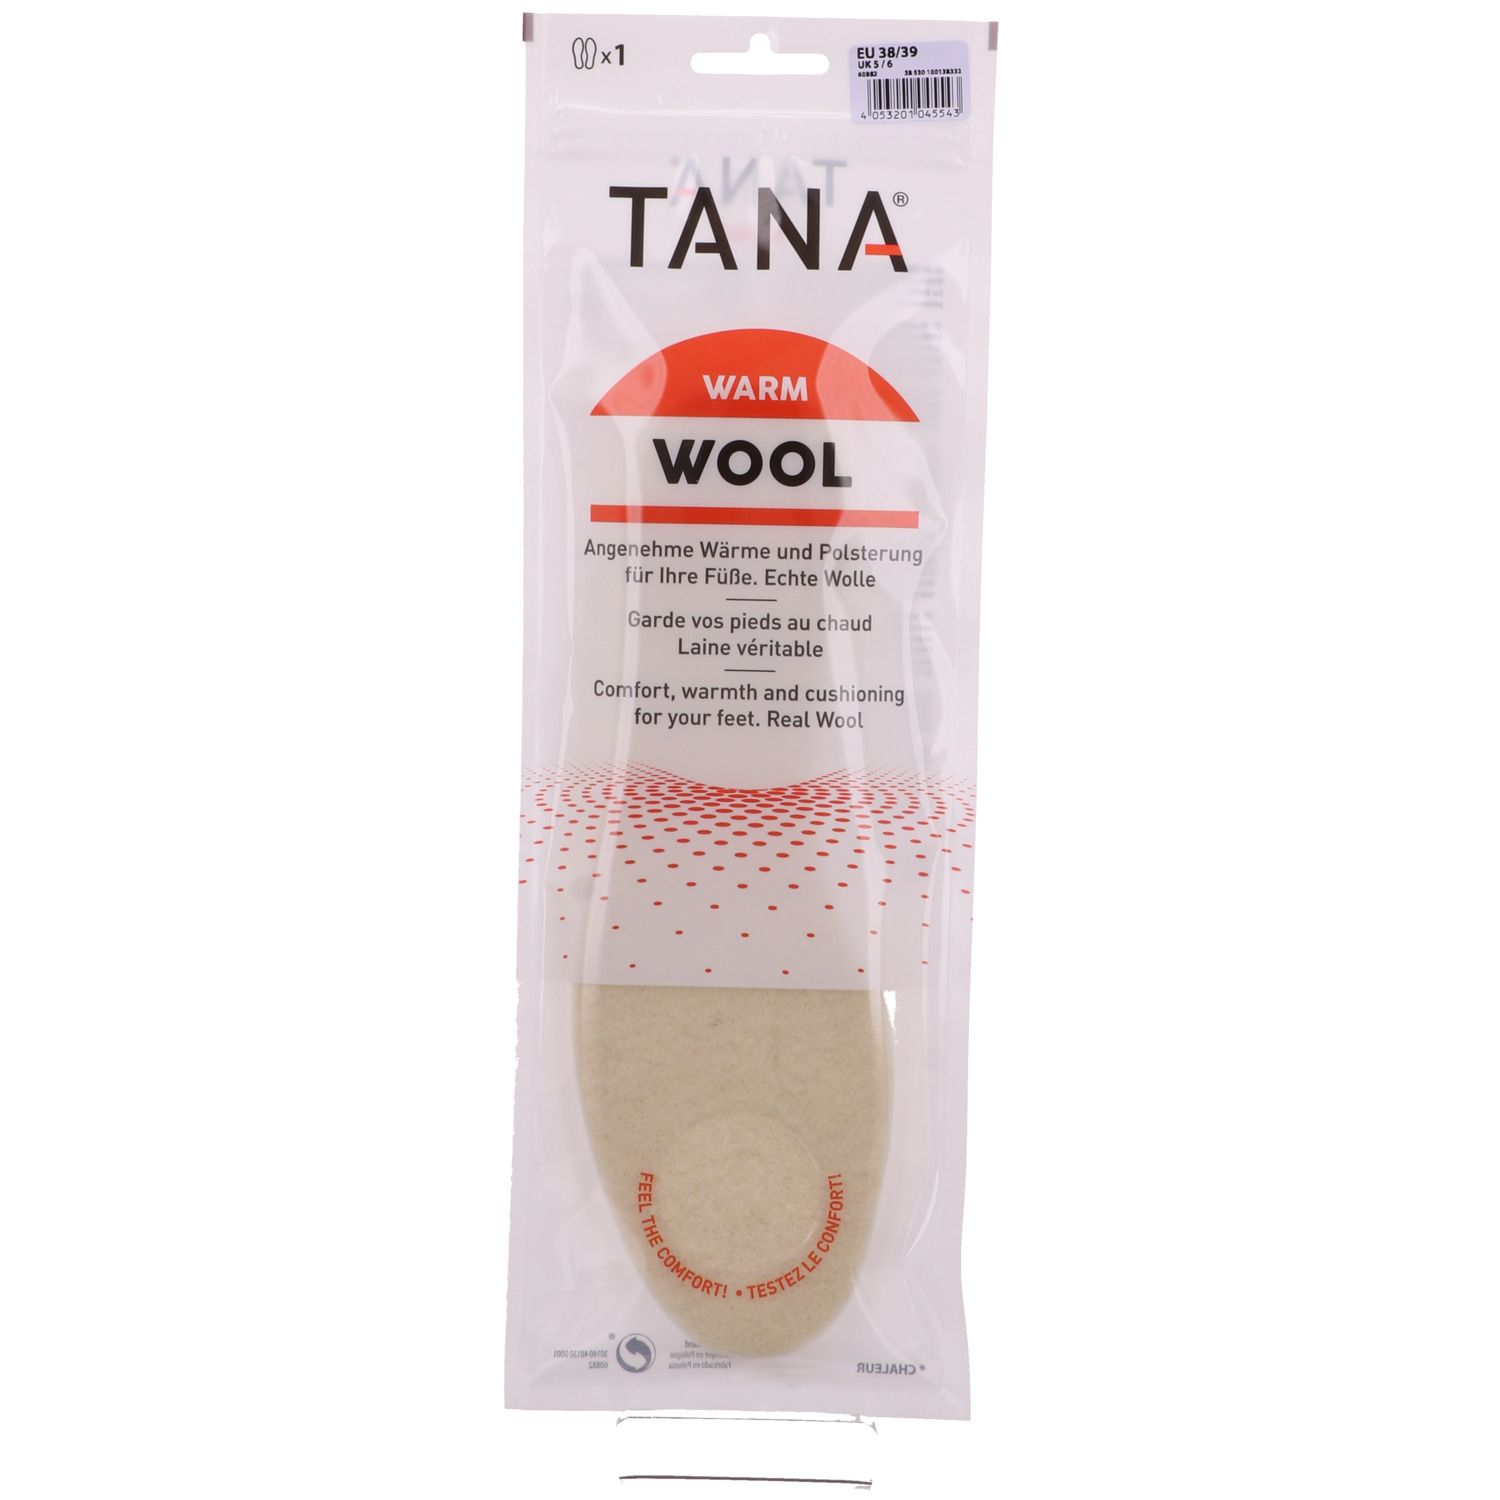 Tana® Wollsohle WOOL